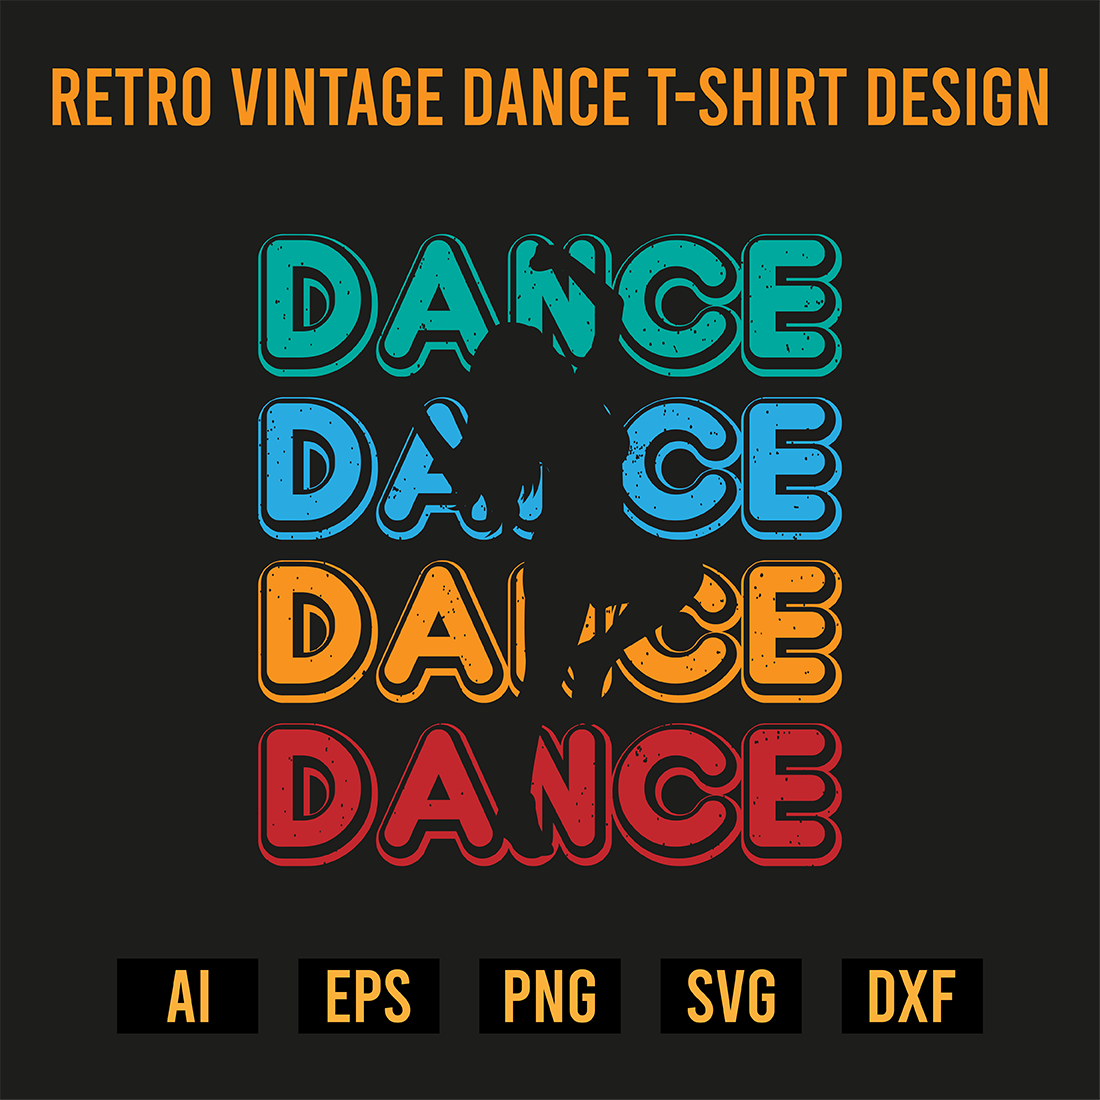 Retro Vintage Dance T-Shirt Design preview image.